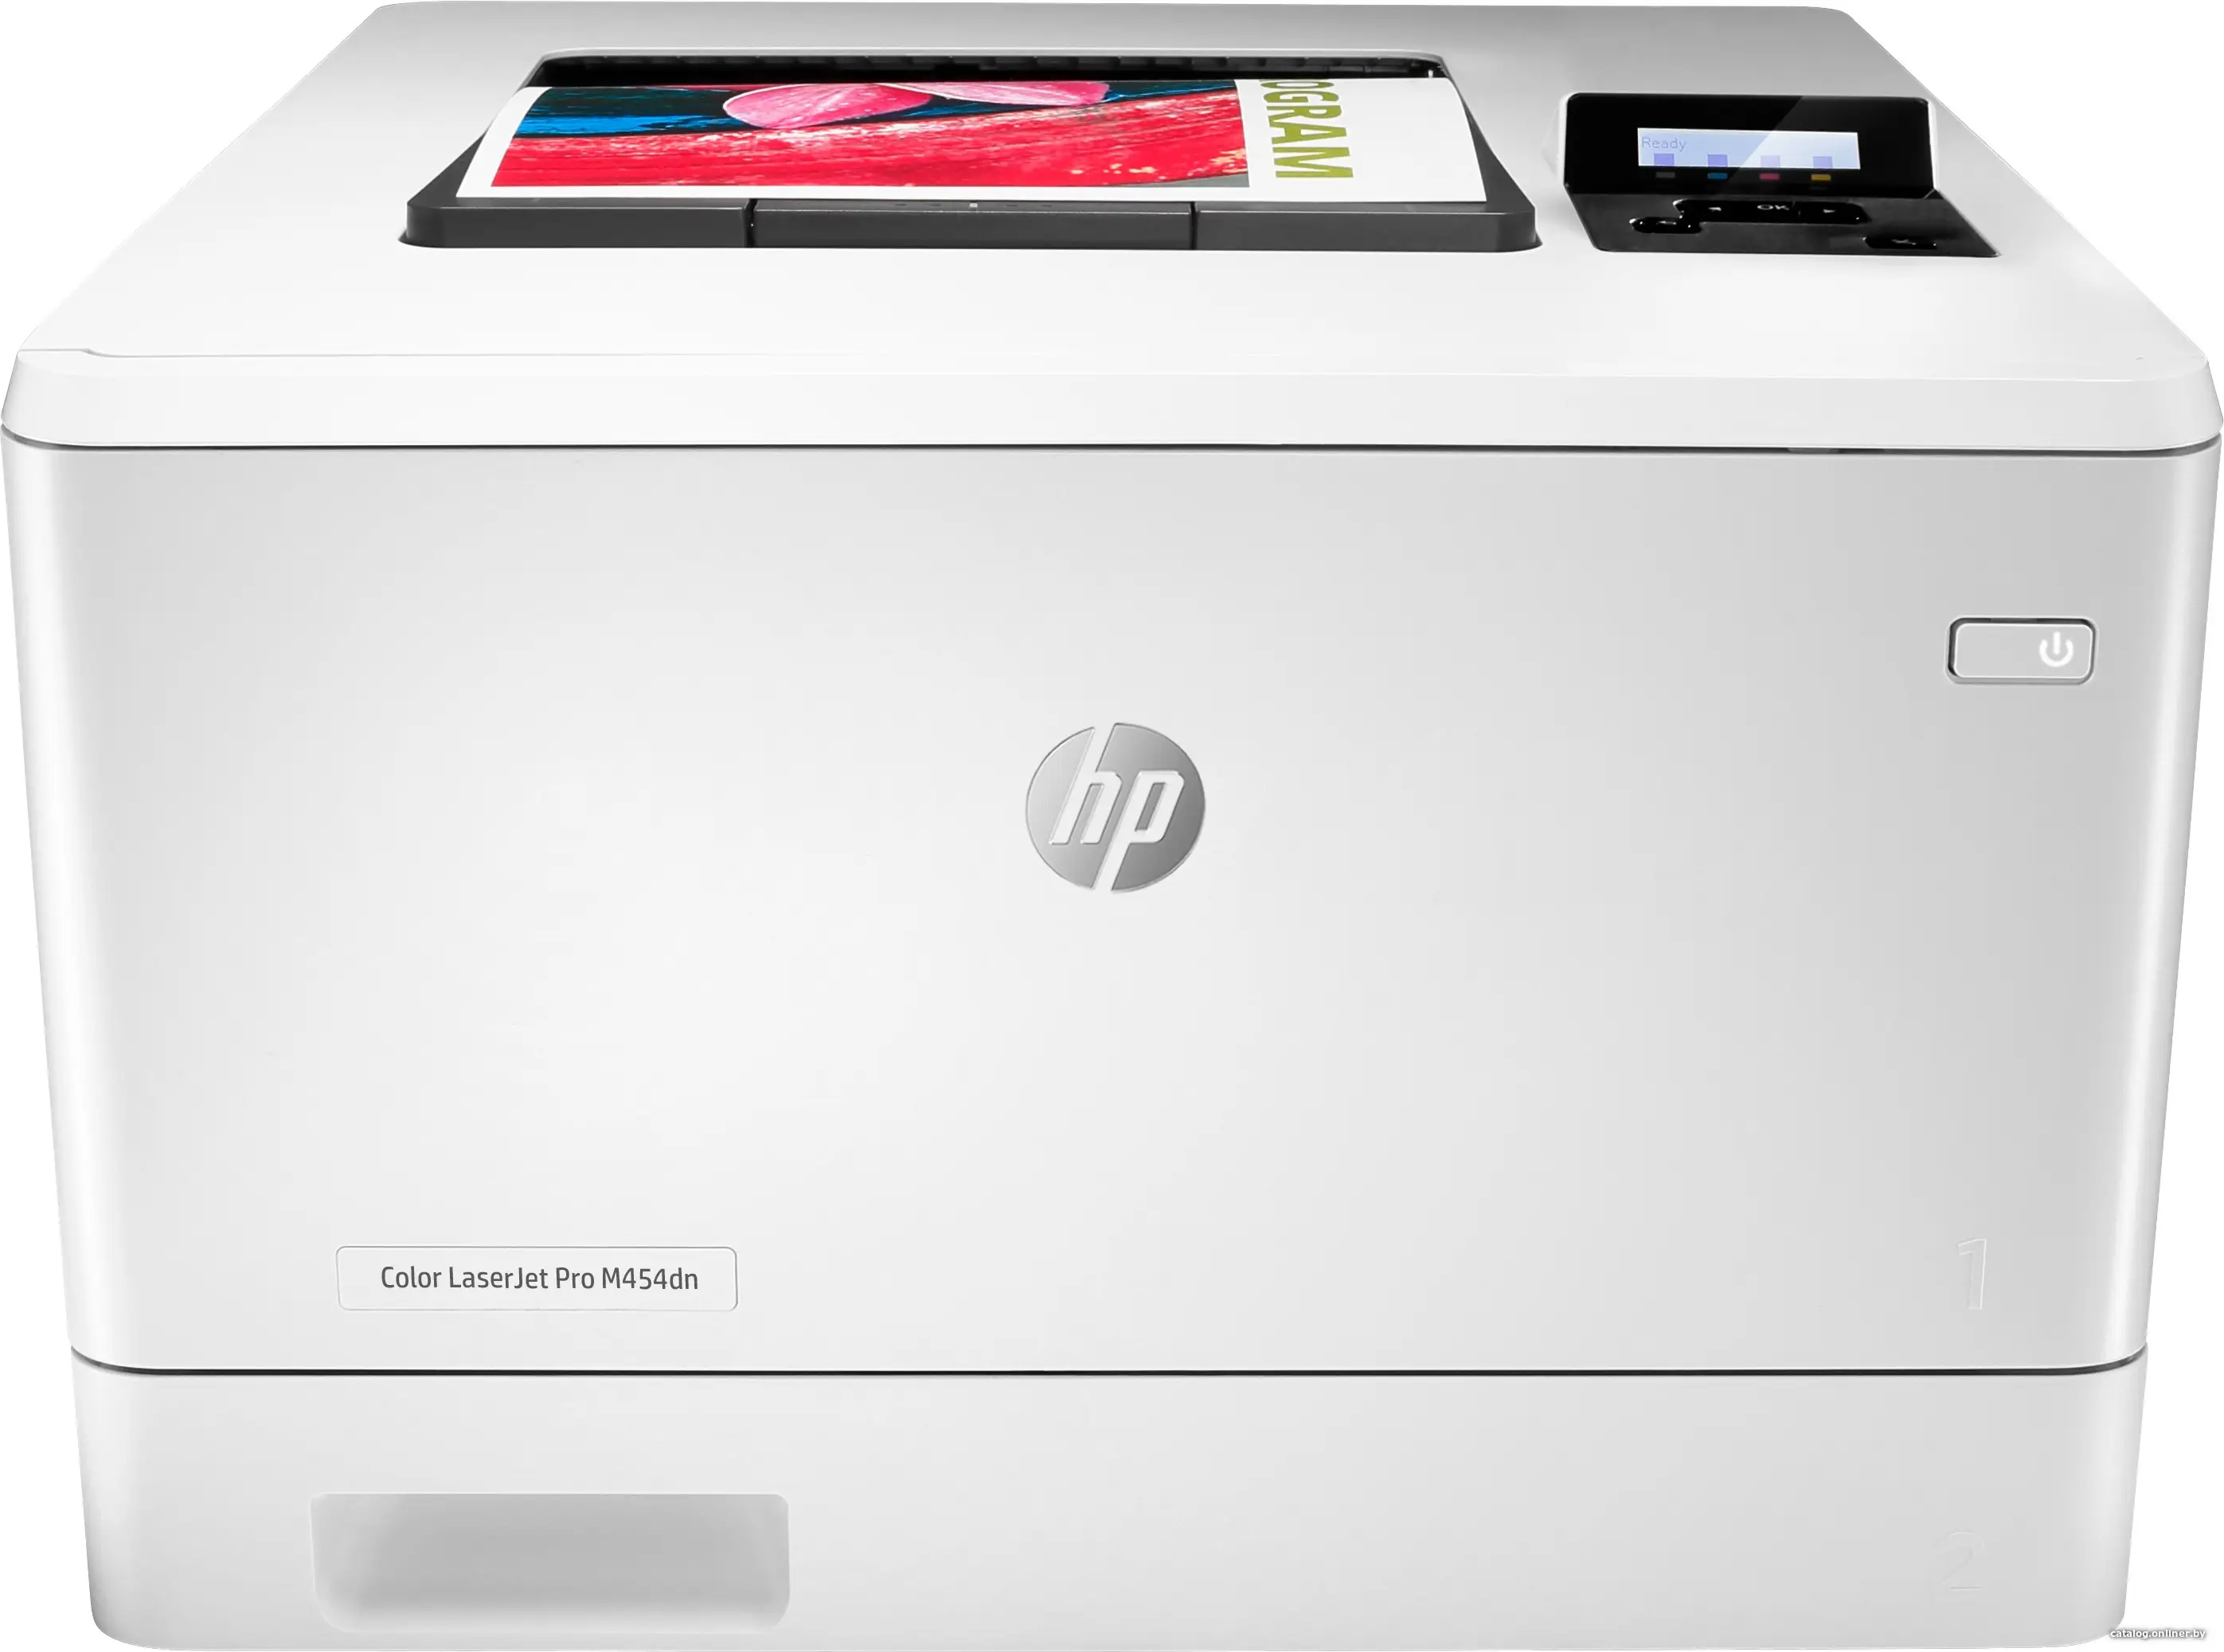 Купить Принтер HP LaserJet Pro M454dn (W1Y44A), цена, опт и розница